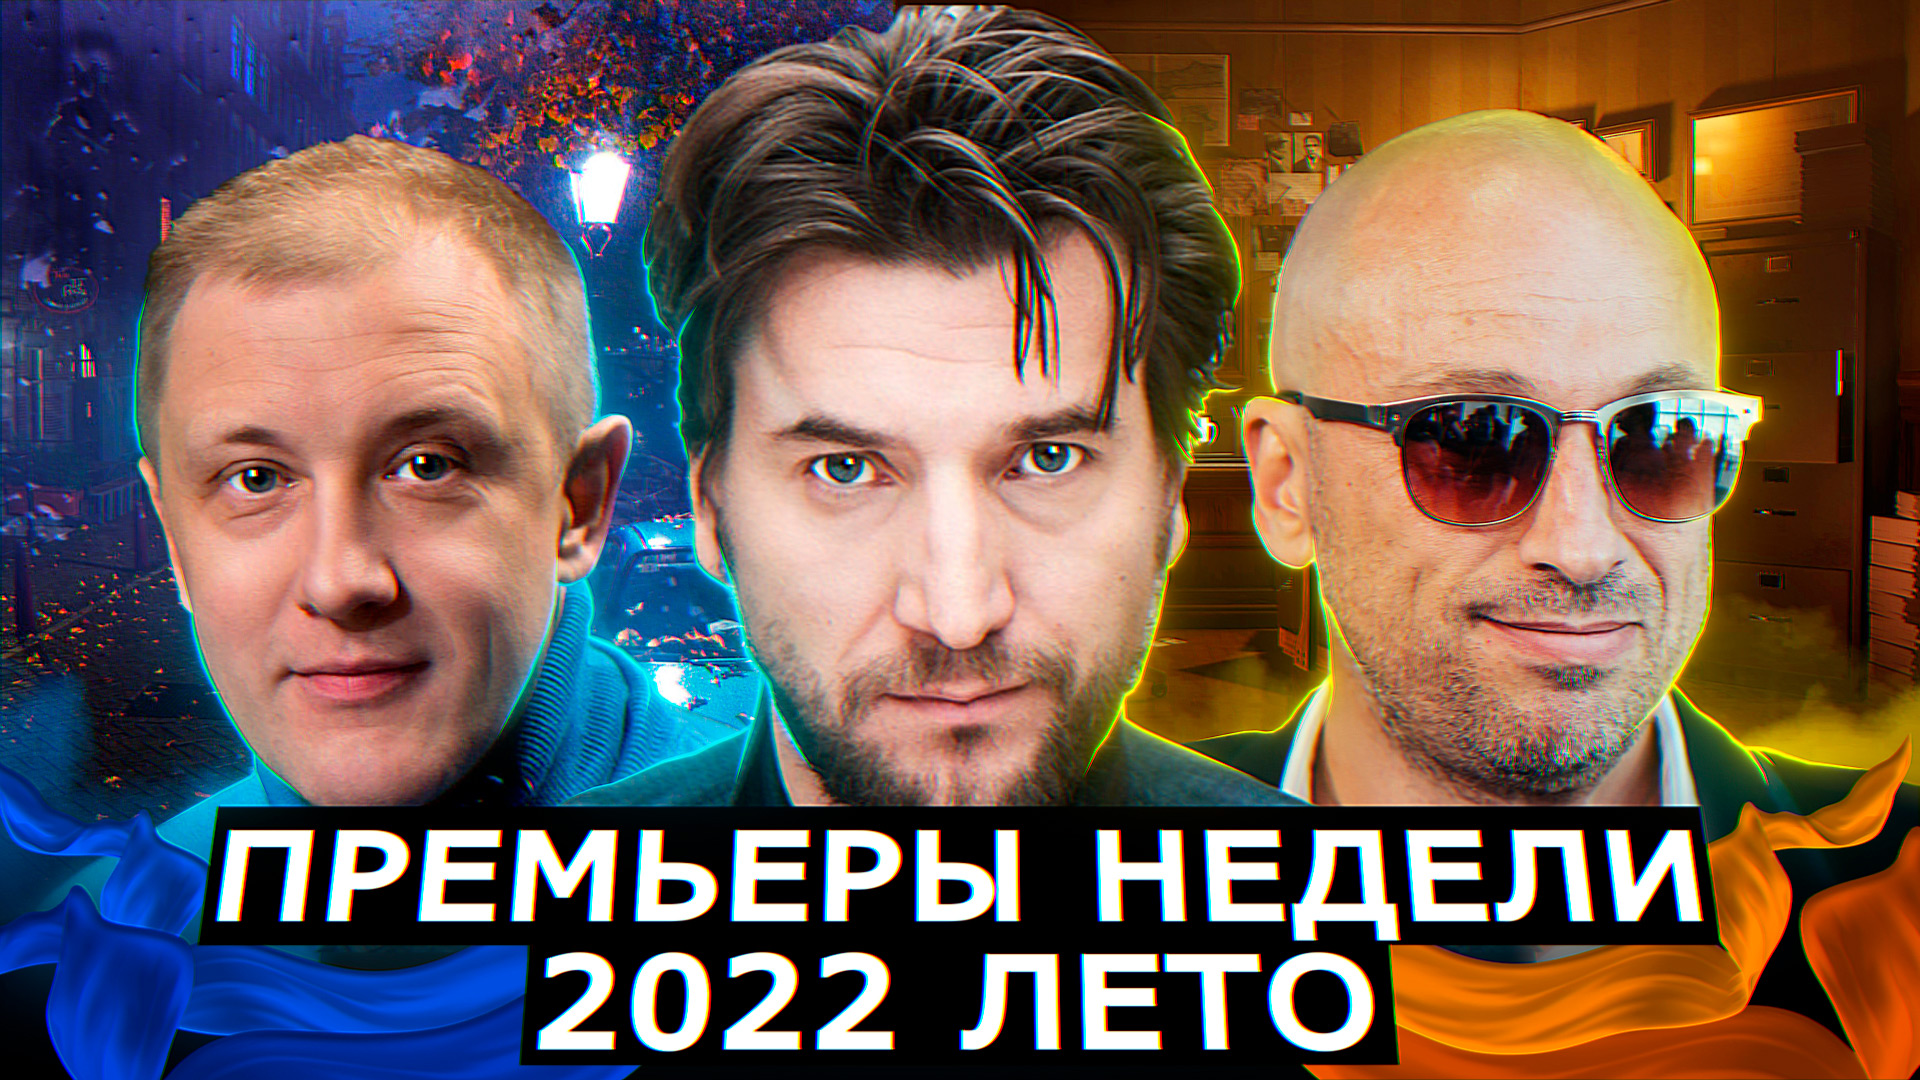 ПРЕМЬЕРЫ НЕДЕЛИ 2022 ГОДА | 5 Новых русских сериалов июнь июль 2022 года